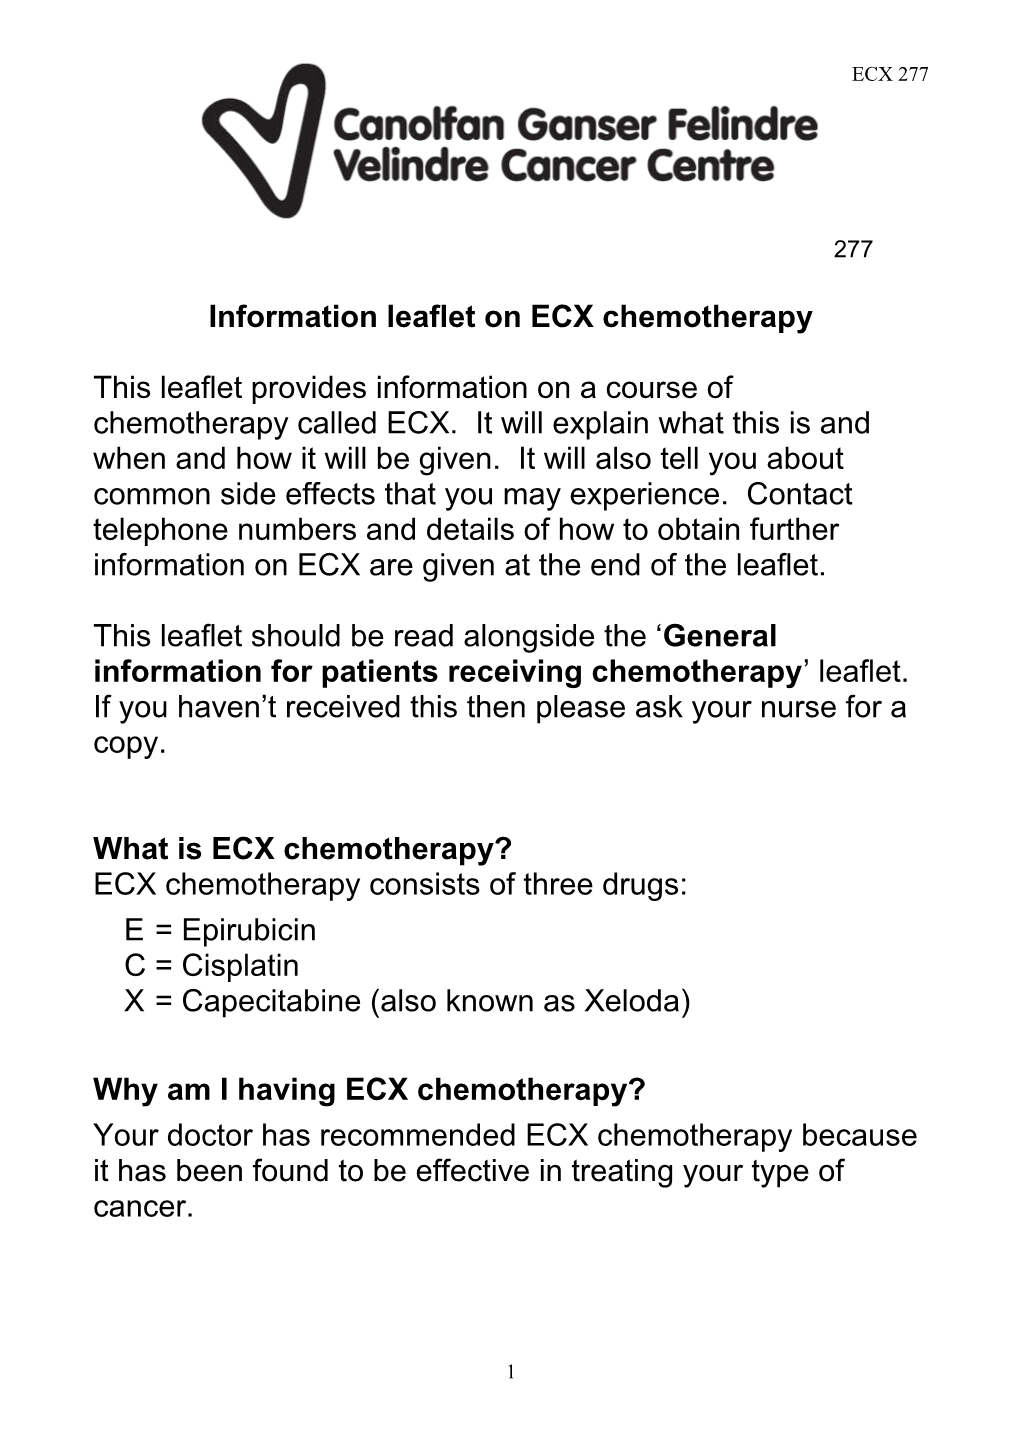 Information Leaflet on Ecxchemotherapy